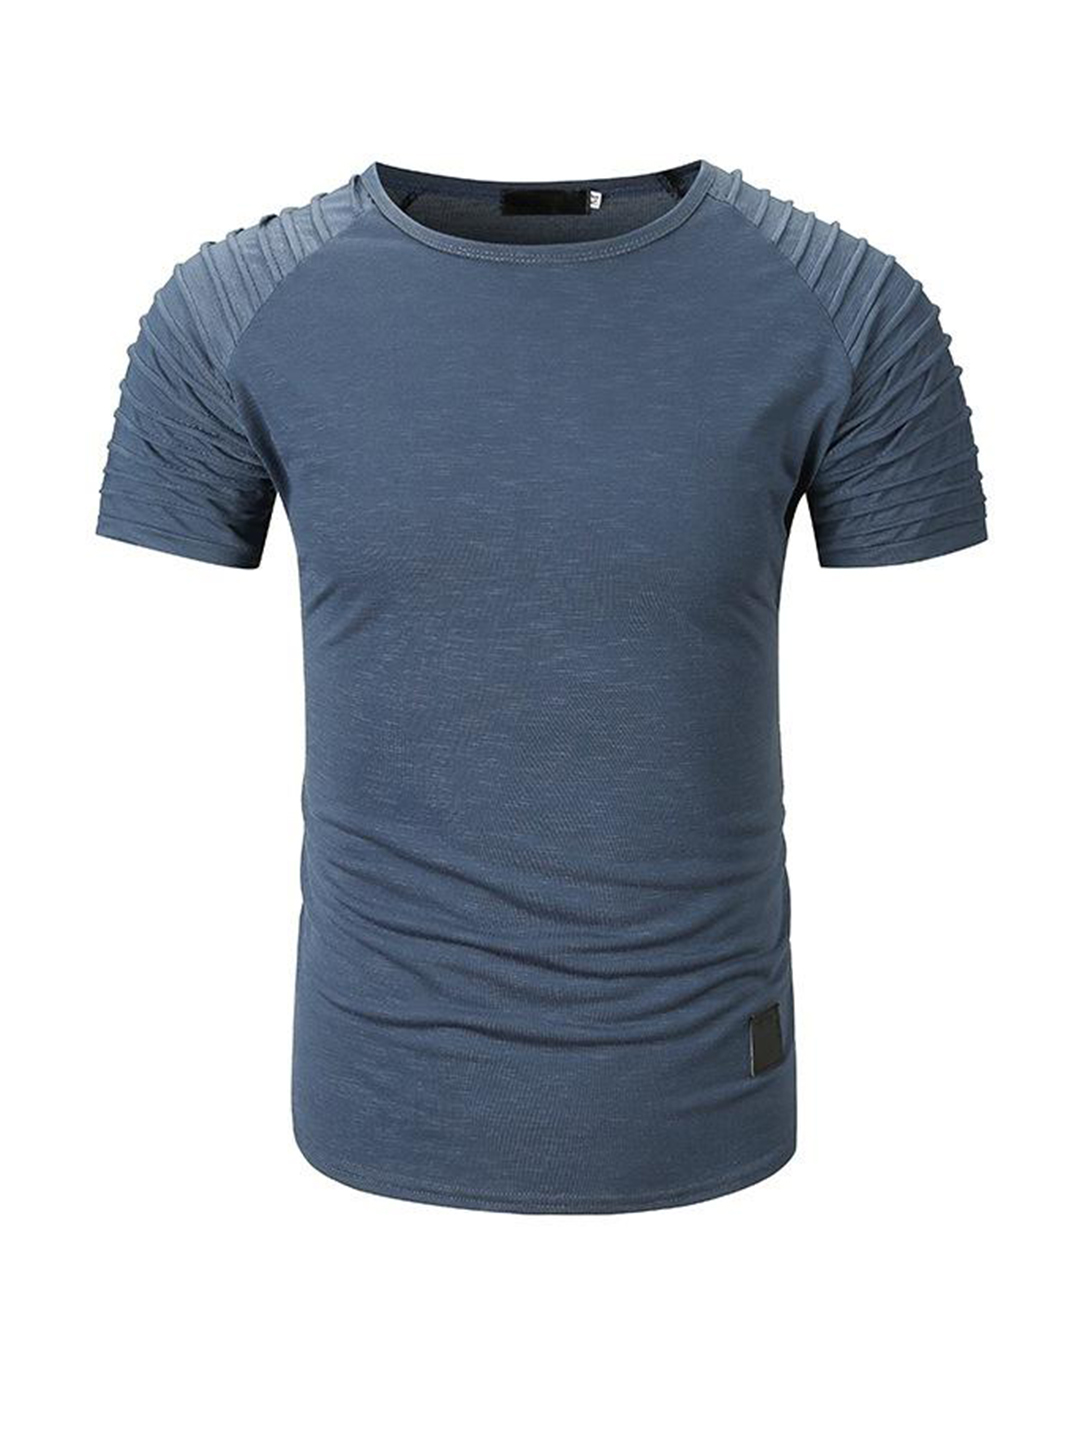 Halter Raglan Sleeves Short Sleeve T-shirt